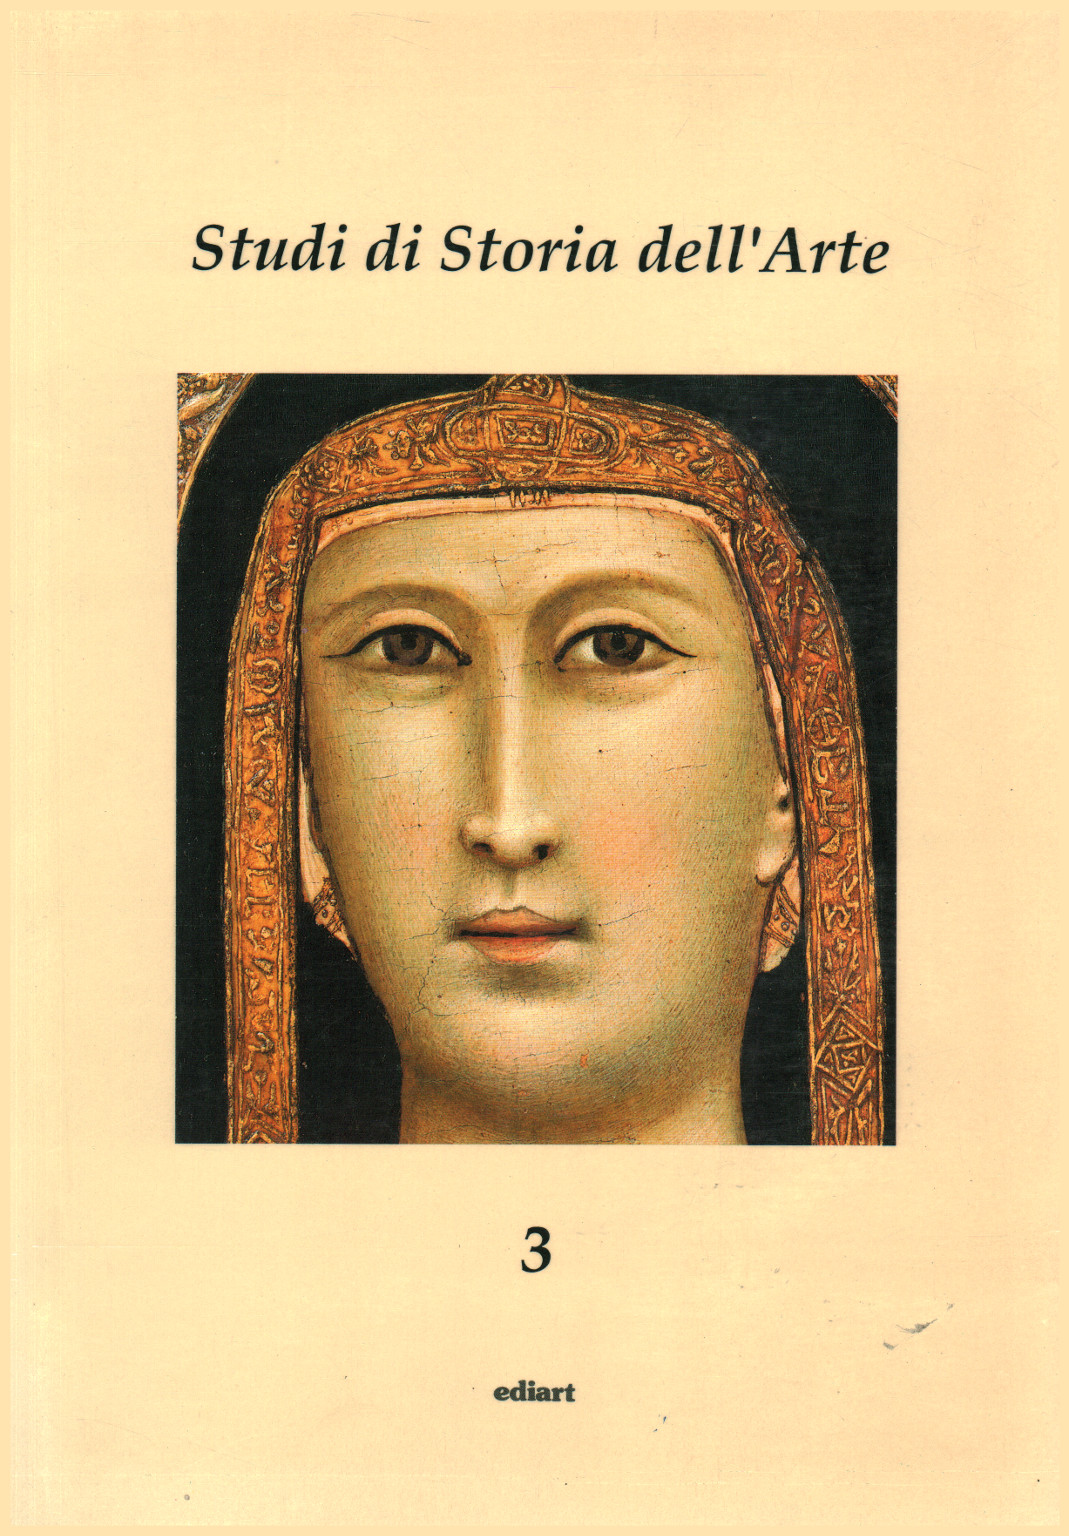 Studi di storia dell arte 3, s.a.